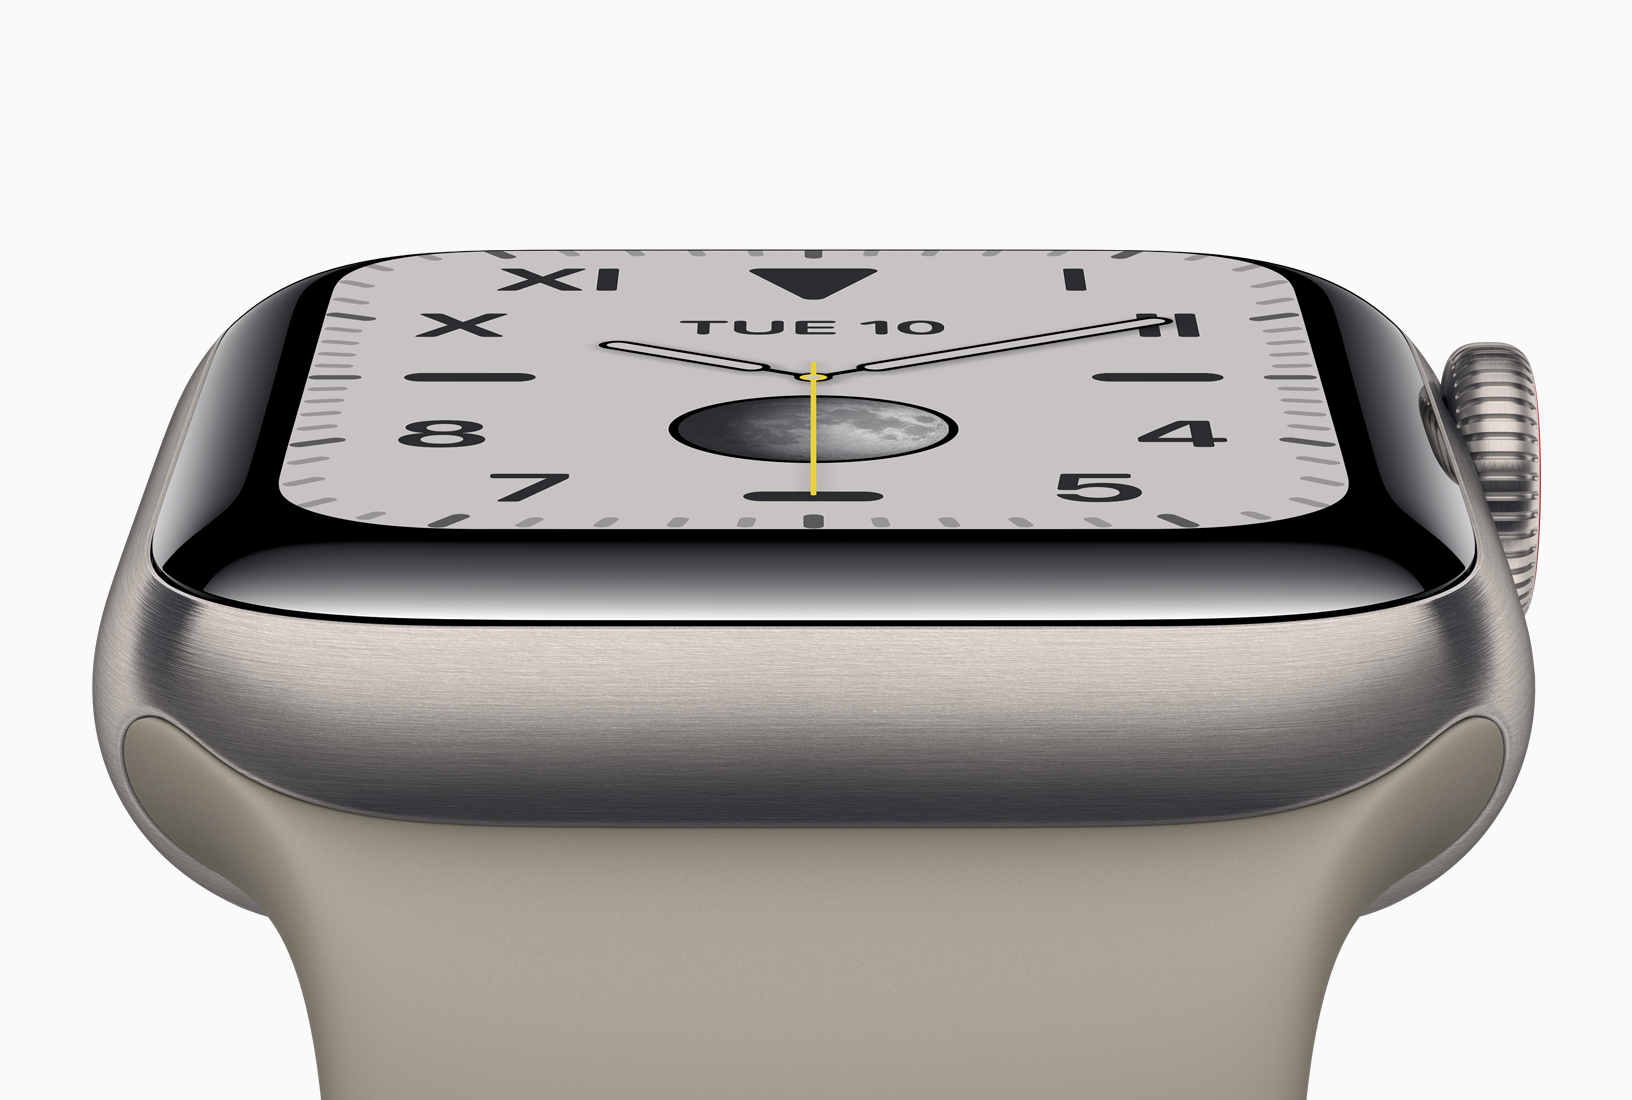 Cinco relojes inteligentes más baratos que el nuevo Apple Watch